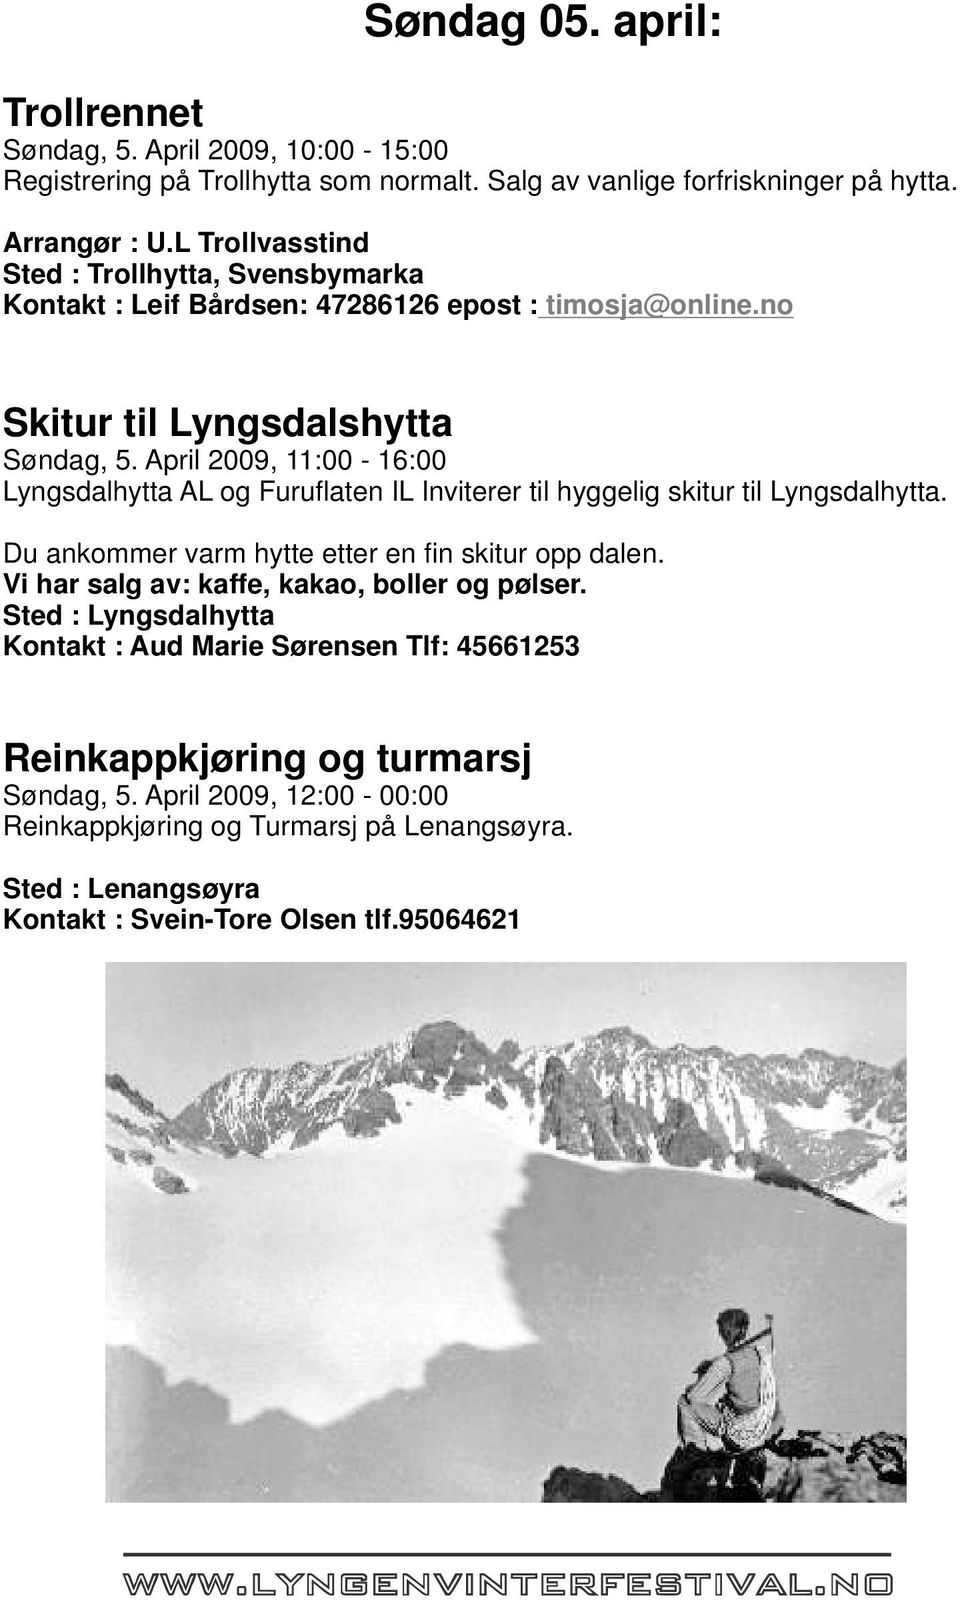 April 2009, 11:00-16:00 Lyngsdalhytta AL og Furuflaten IL Inviterer til hyggelig skitur til Lyngsdalhytta. Du ankommer varm hytte etter en fin skitur opp dalen.